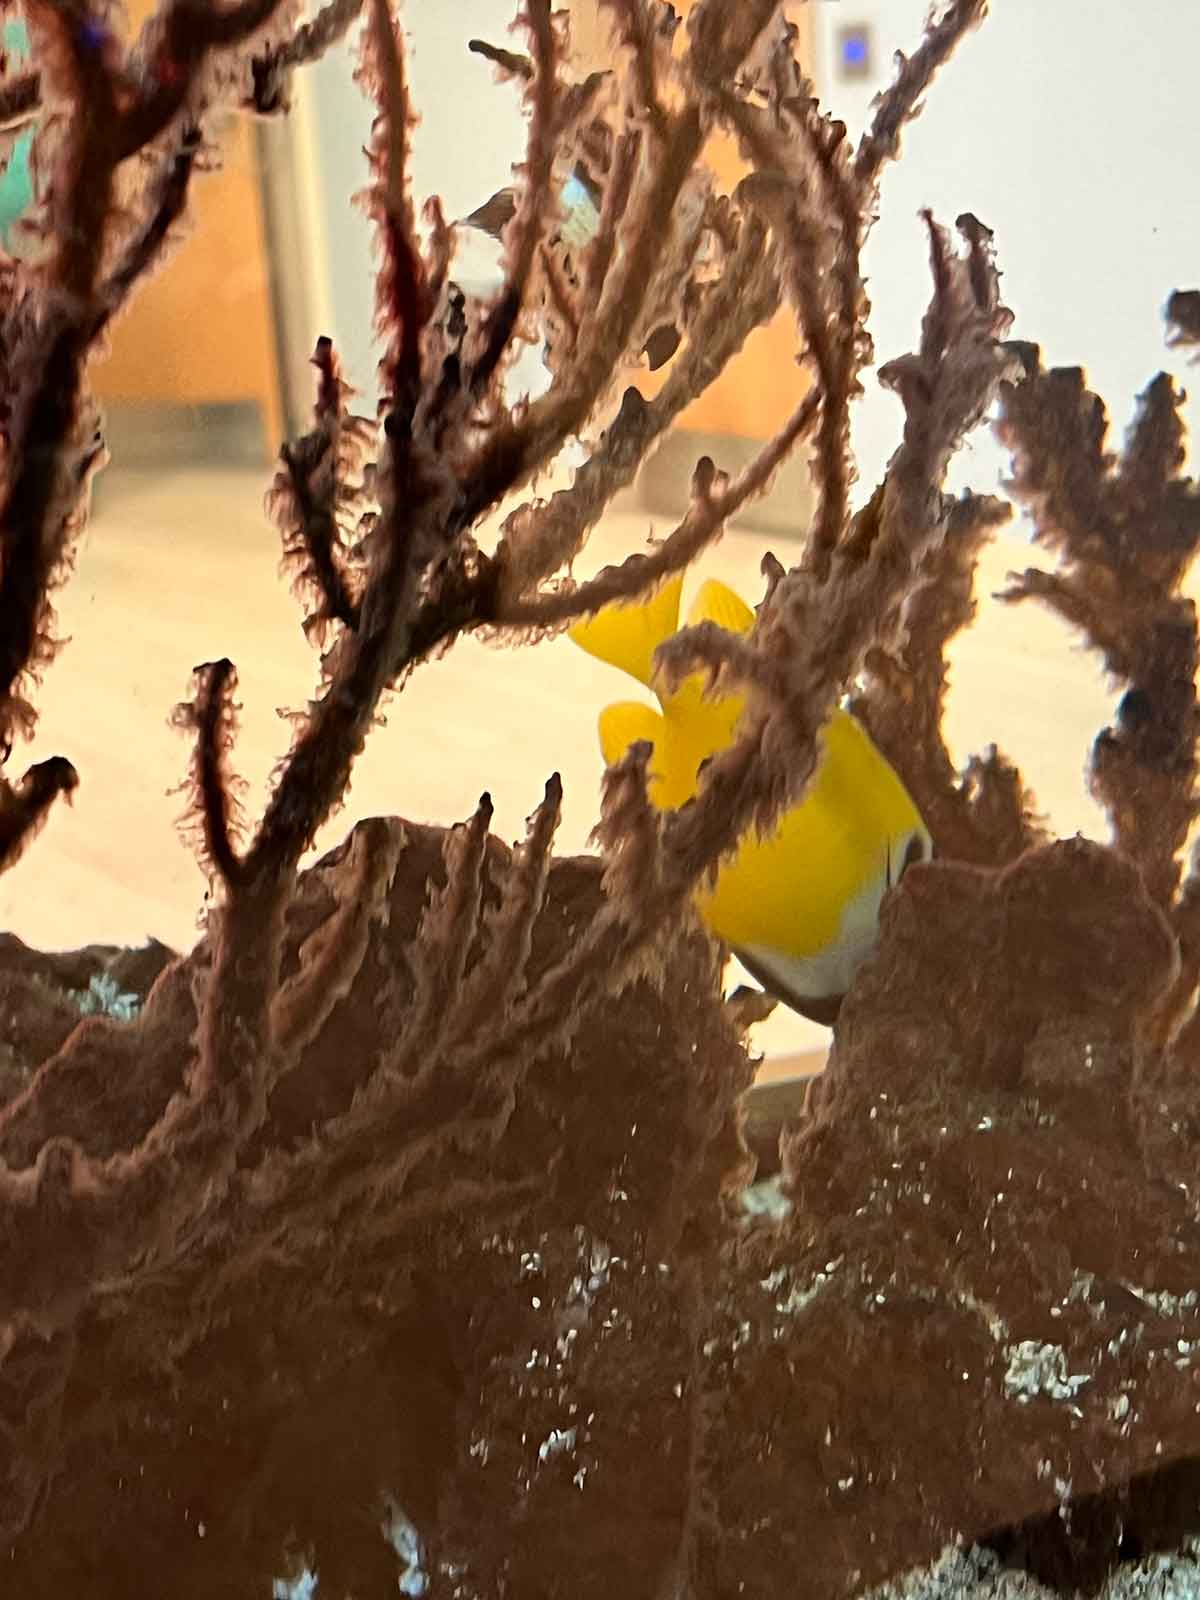 Yellow fish swimming in a fish tank.